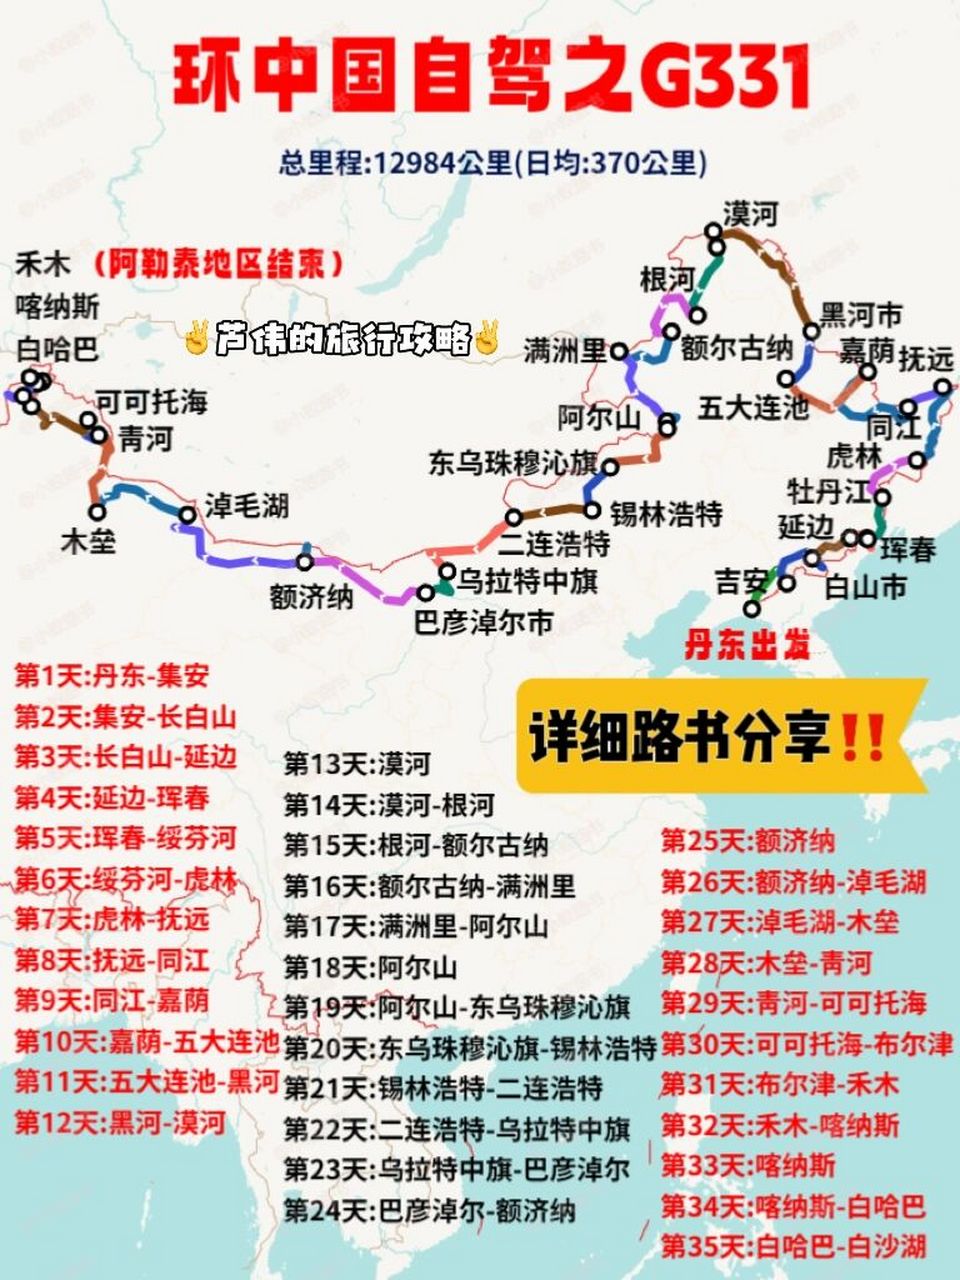 中国北境公路之王:国道g331自驾路书分享95 90国道g331是祖国最北